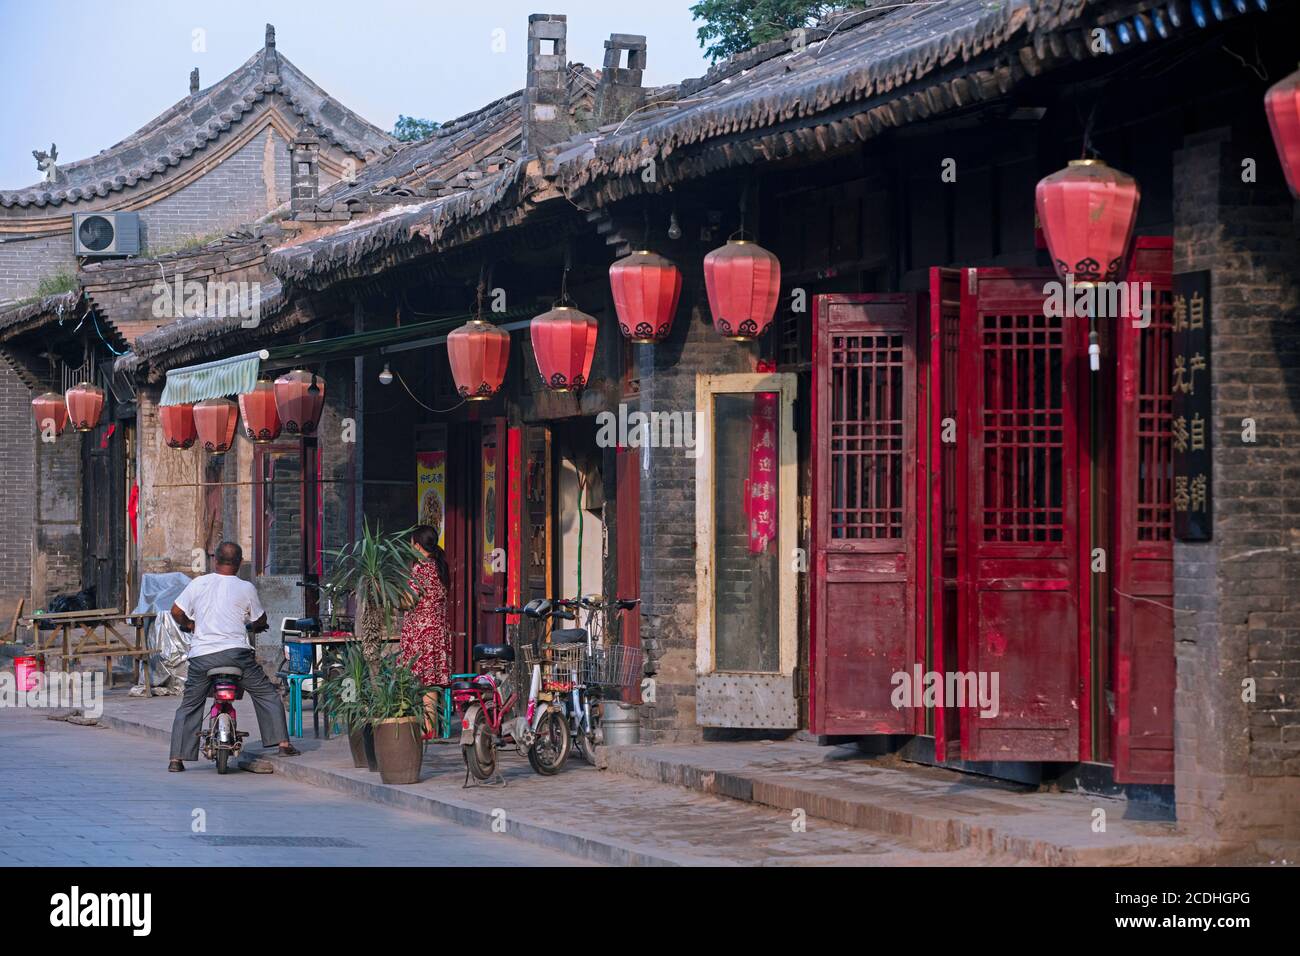 Boutiques et résidences du XVIIe au XIXe siècle dans la rue principale de la ville de Pingyao, Jinzhong, province de Shanxi/Shansi, Chine Banque D'Images